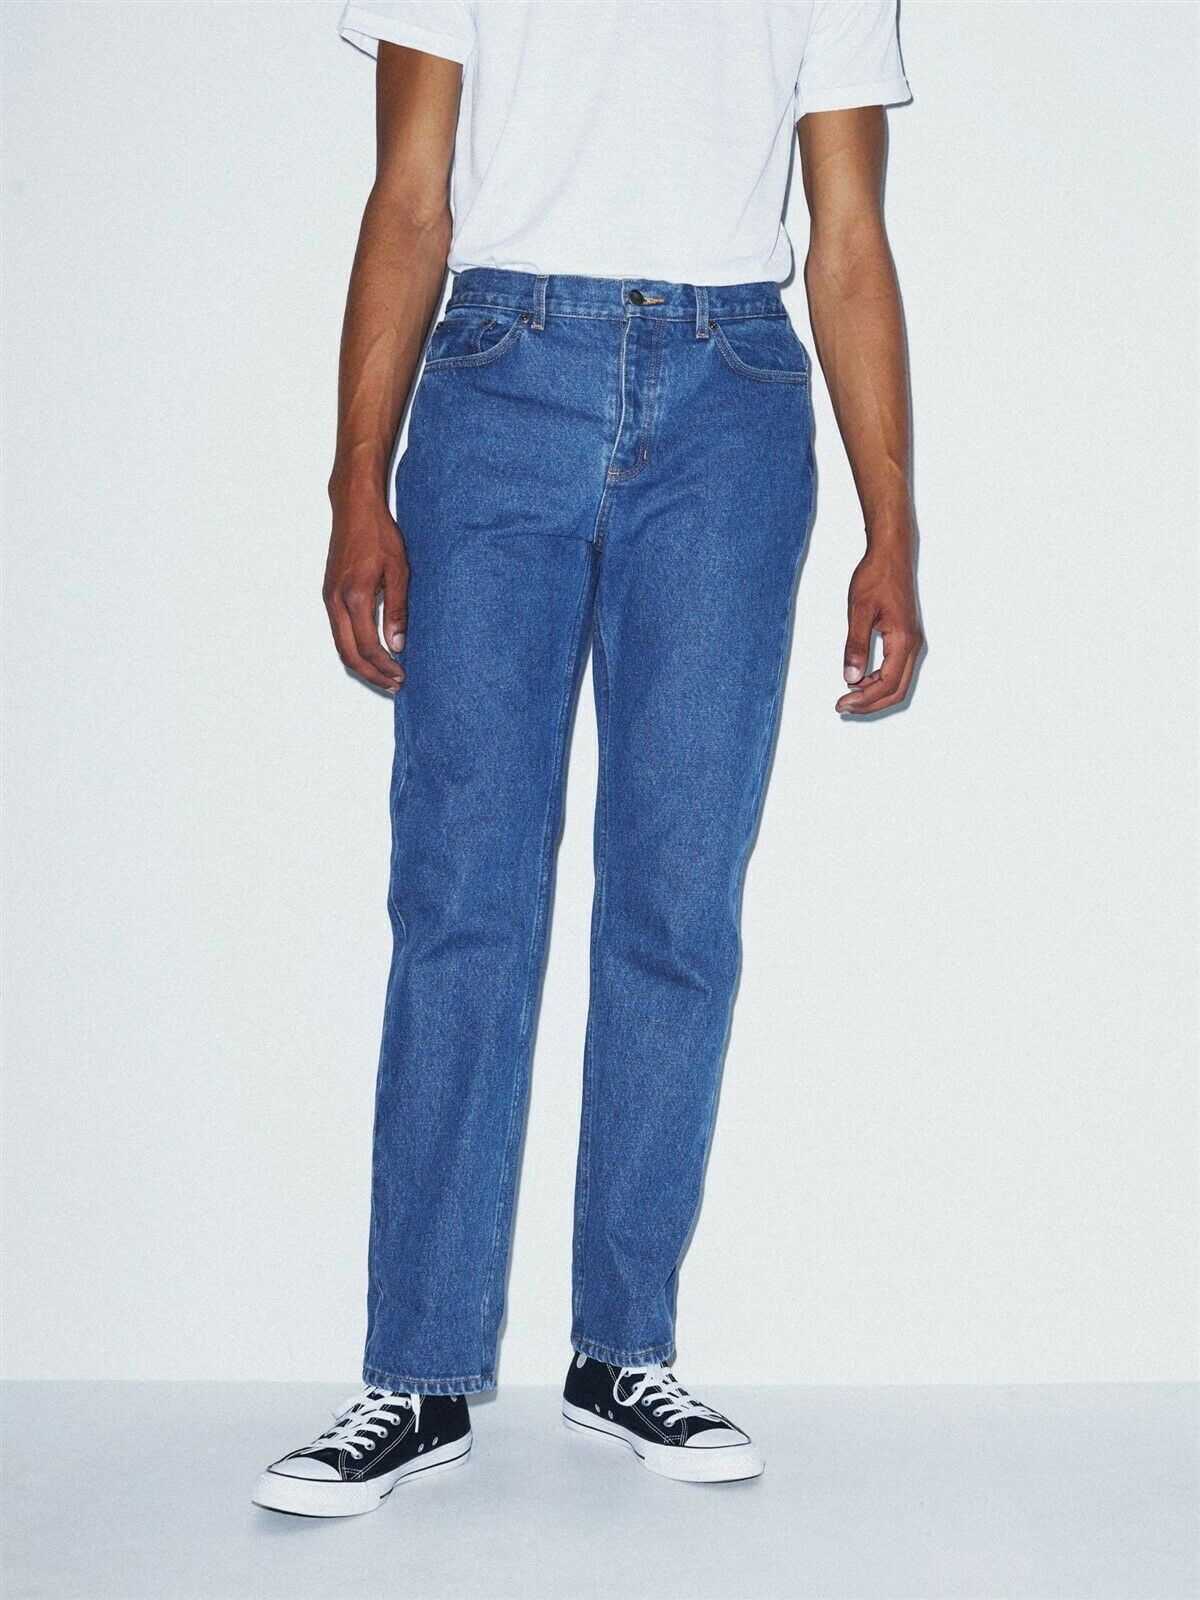 American Men's Straight Jean 30 x Wash NEW DM4566W - Walmart.com